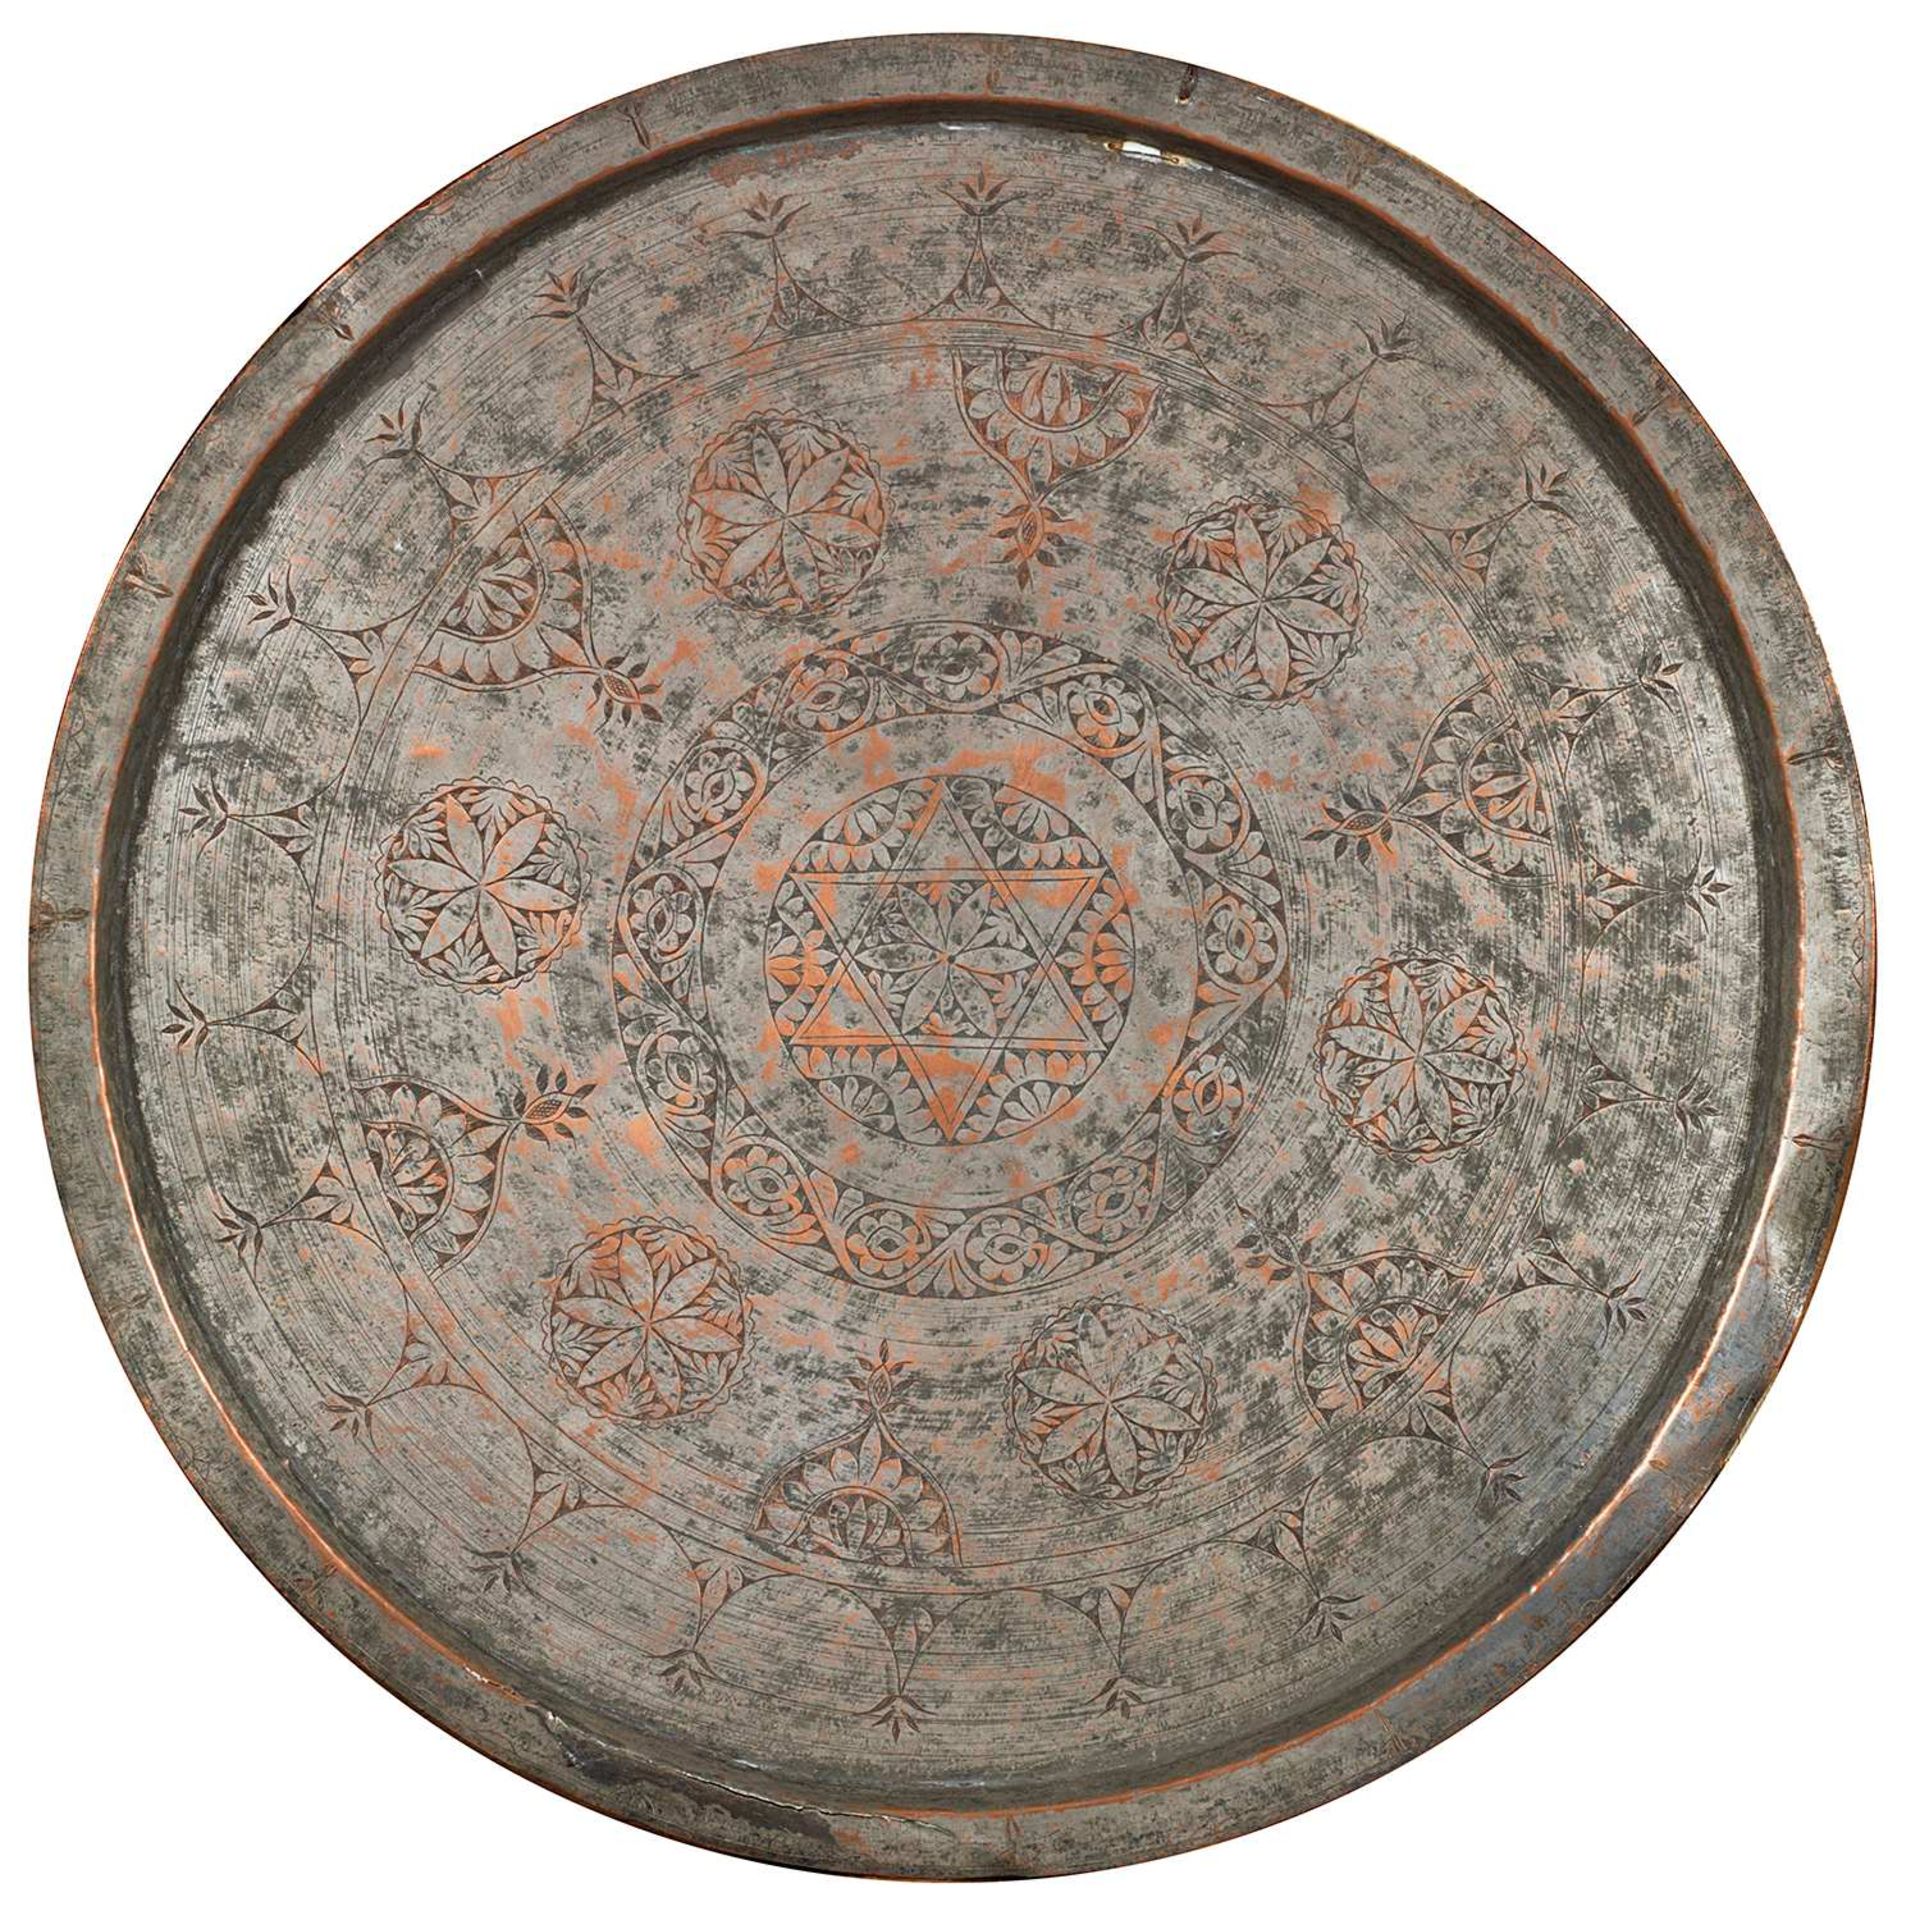 GRAND PLATEAU OTTOMAN circulaire en cuivre étamé à décor gravé de rosaces, médaillons et rinceaux